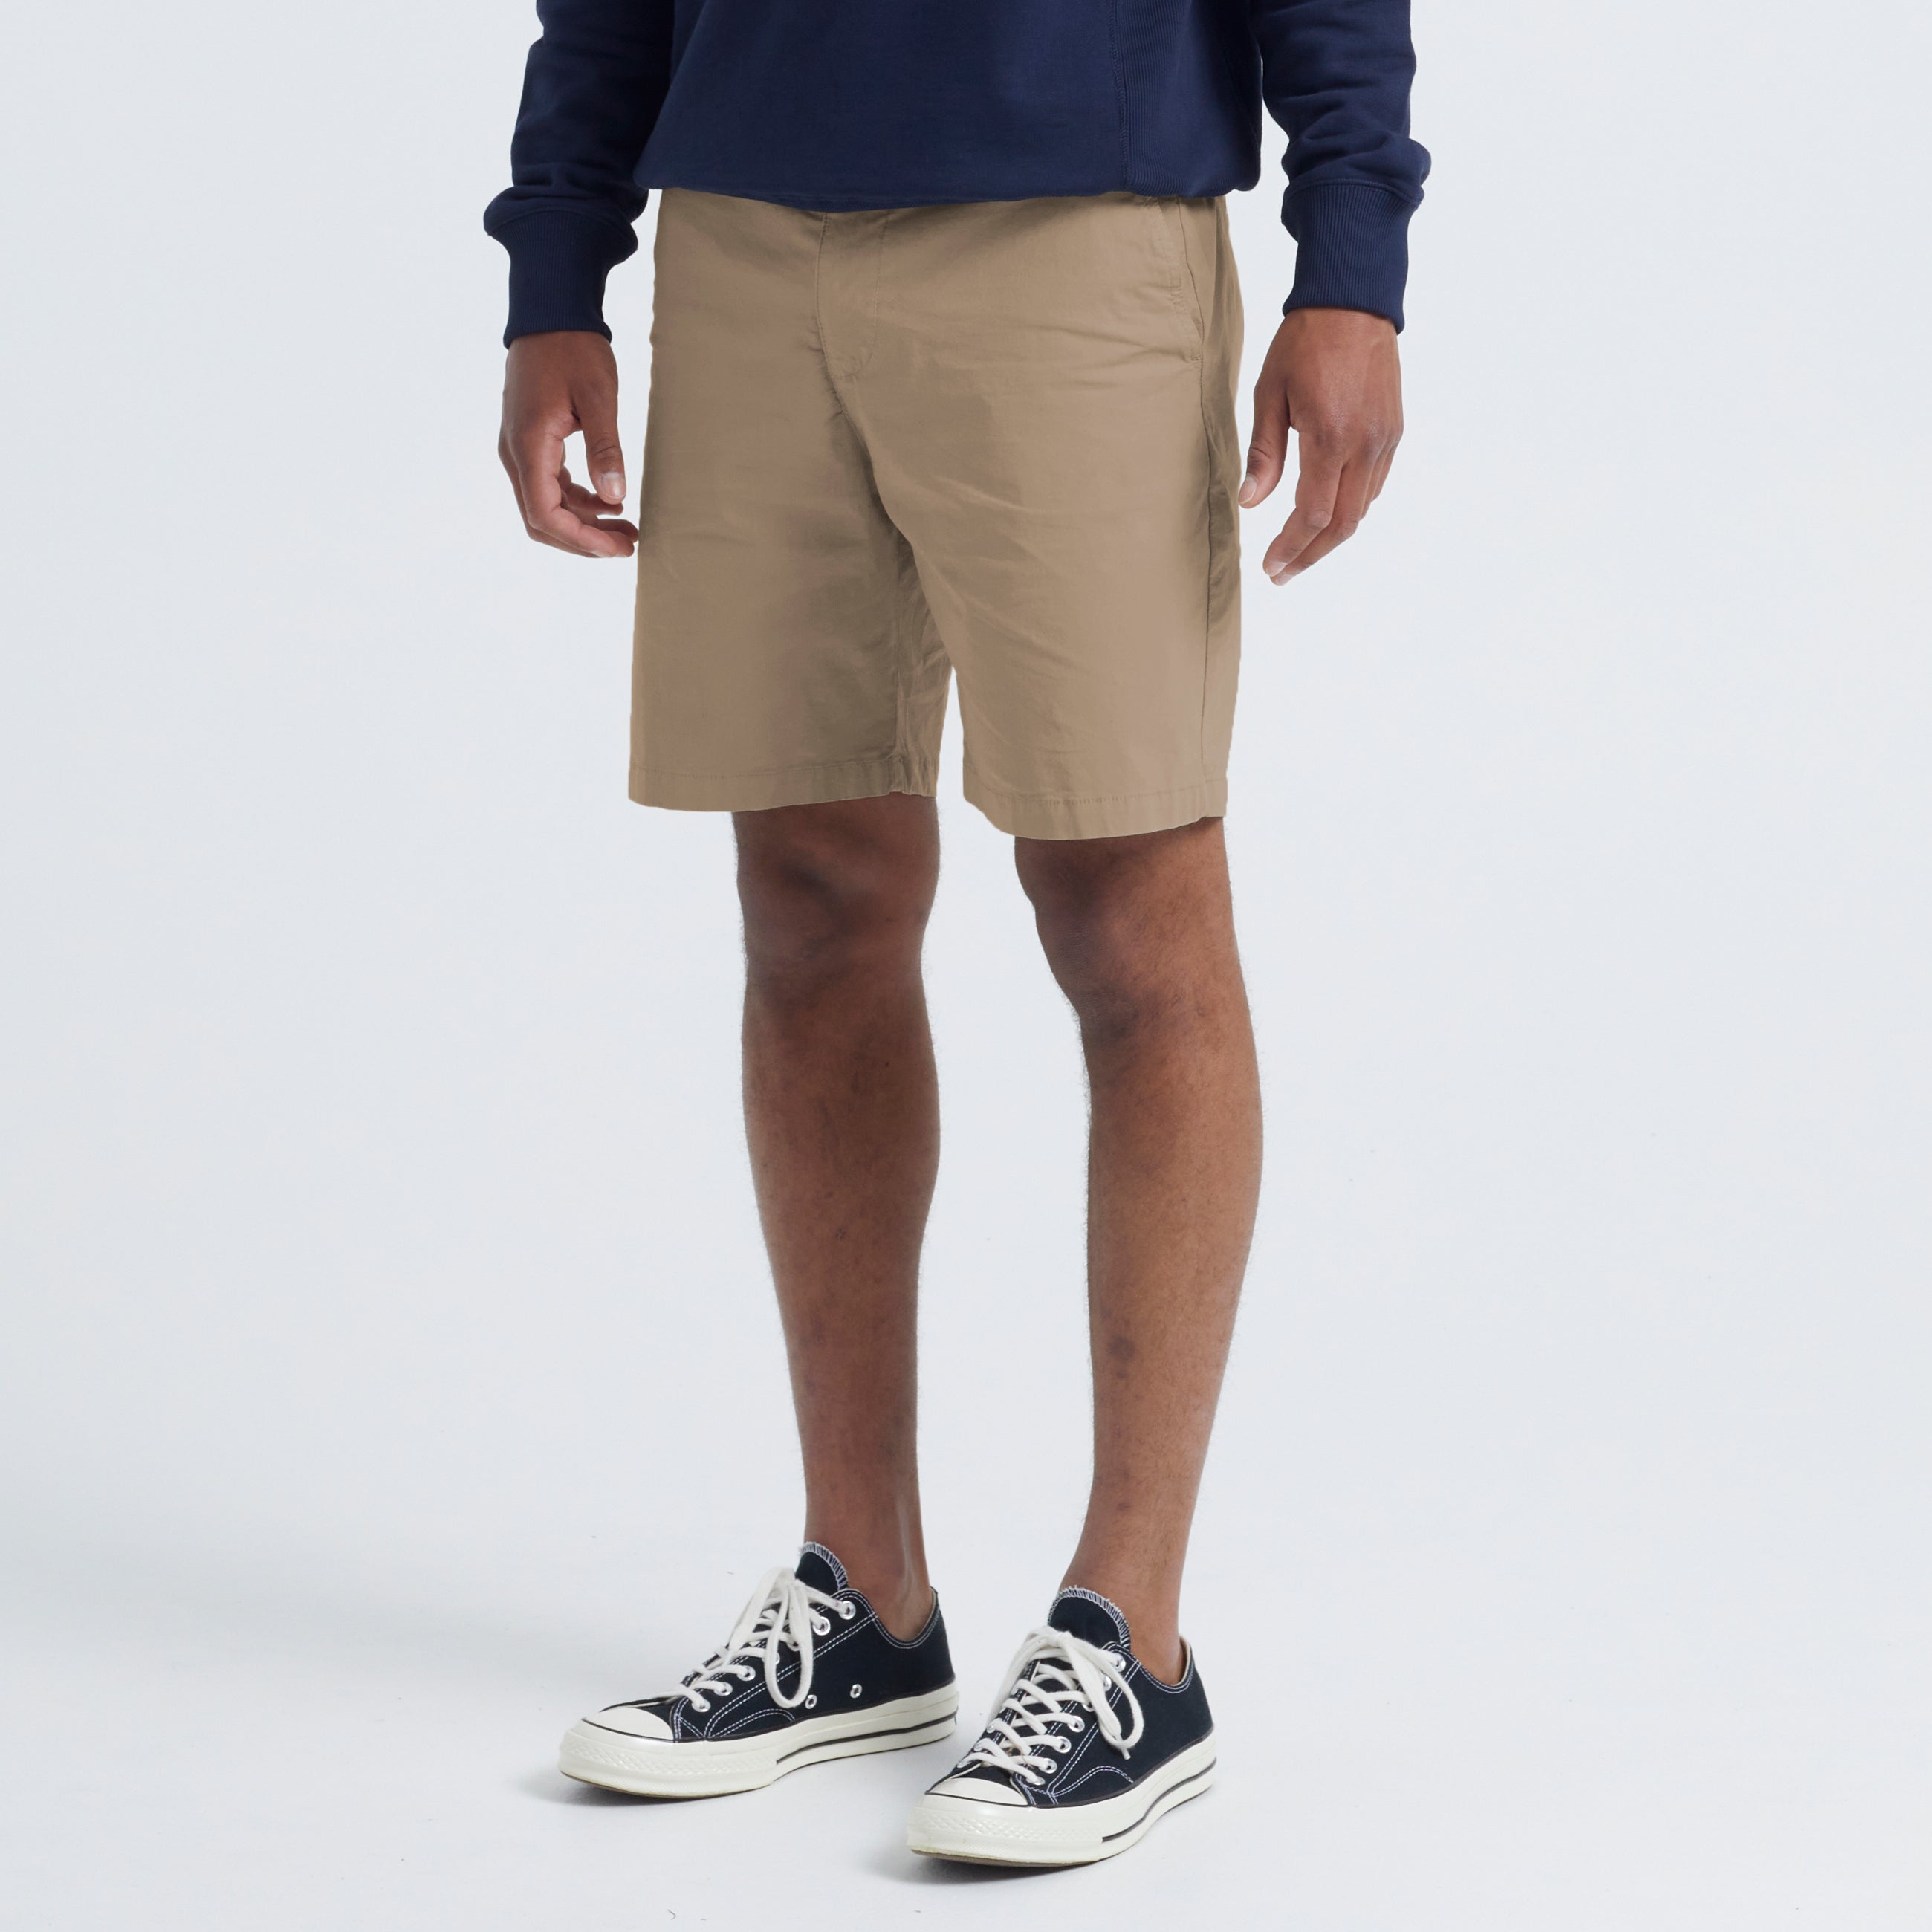 Se Gideon Light Cotton Shorts - Khaki - S / Khaki hos bygarmentmakers.dk